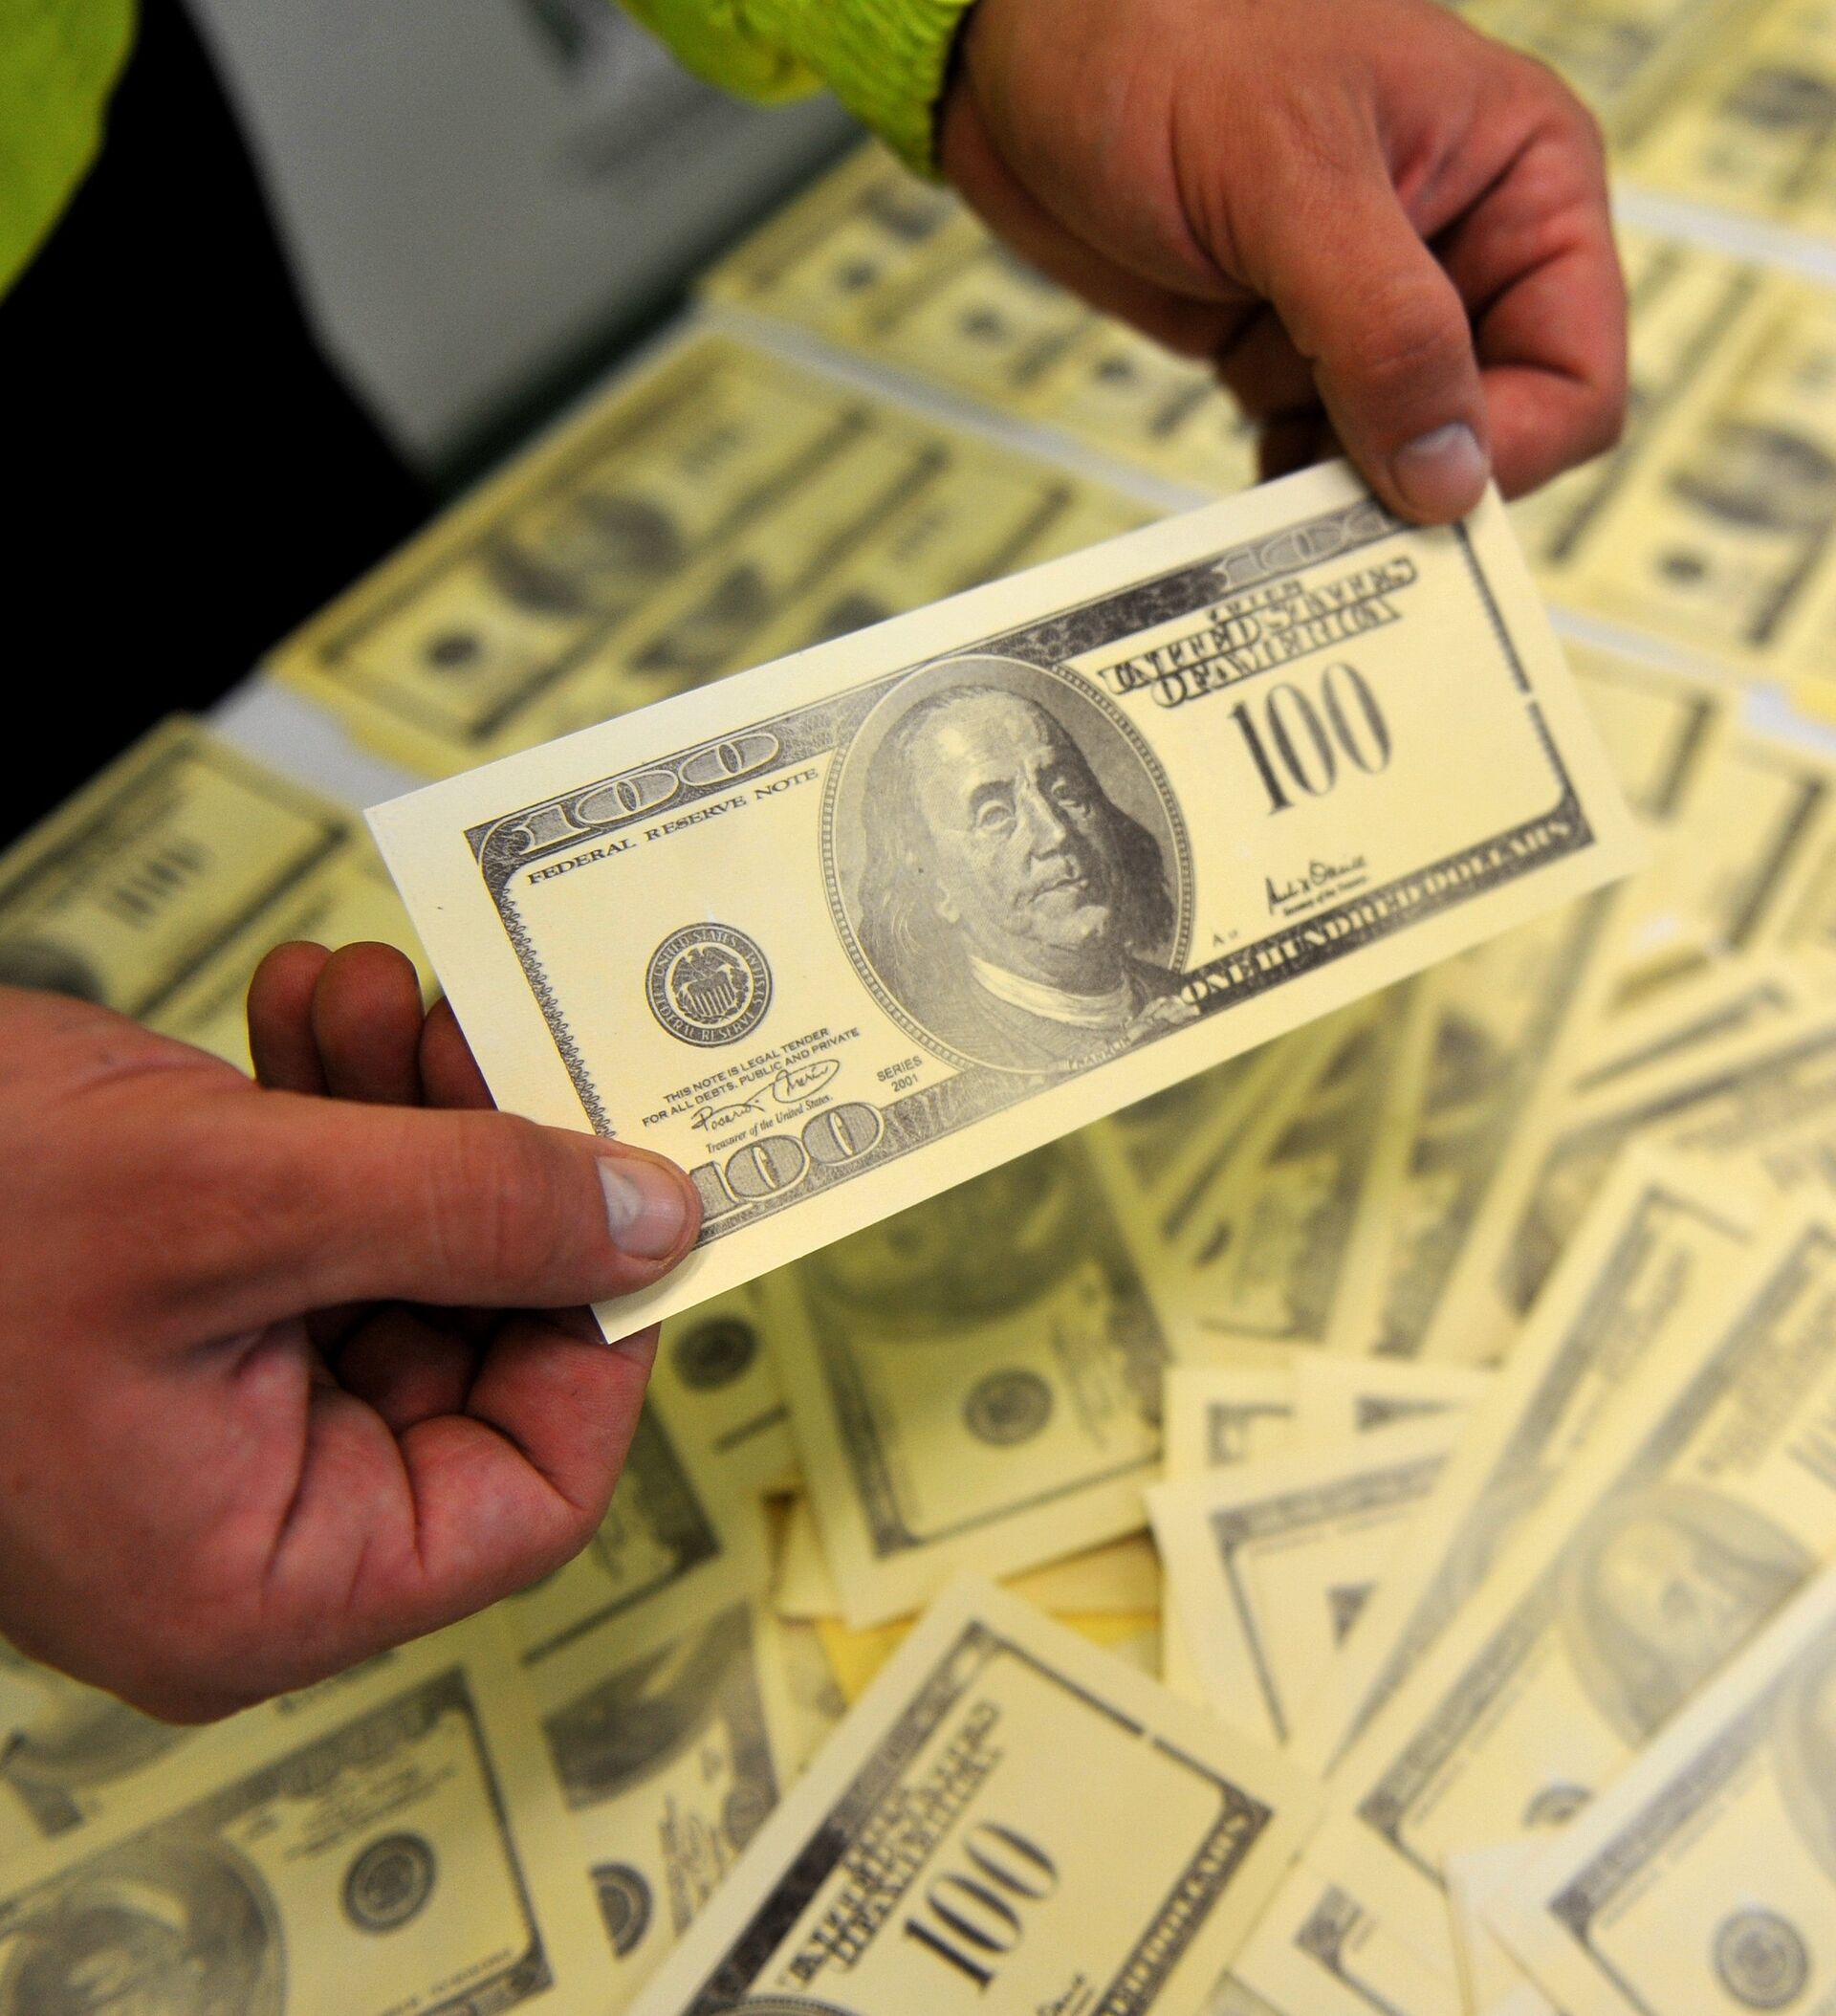 Фальшивые деньги Кыргызстан. Доллары с печатью в Киргизии. Фальшивые деньги Бишкек. Акча картинка. 20 тыс долл